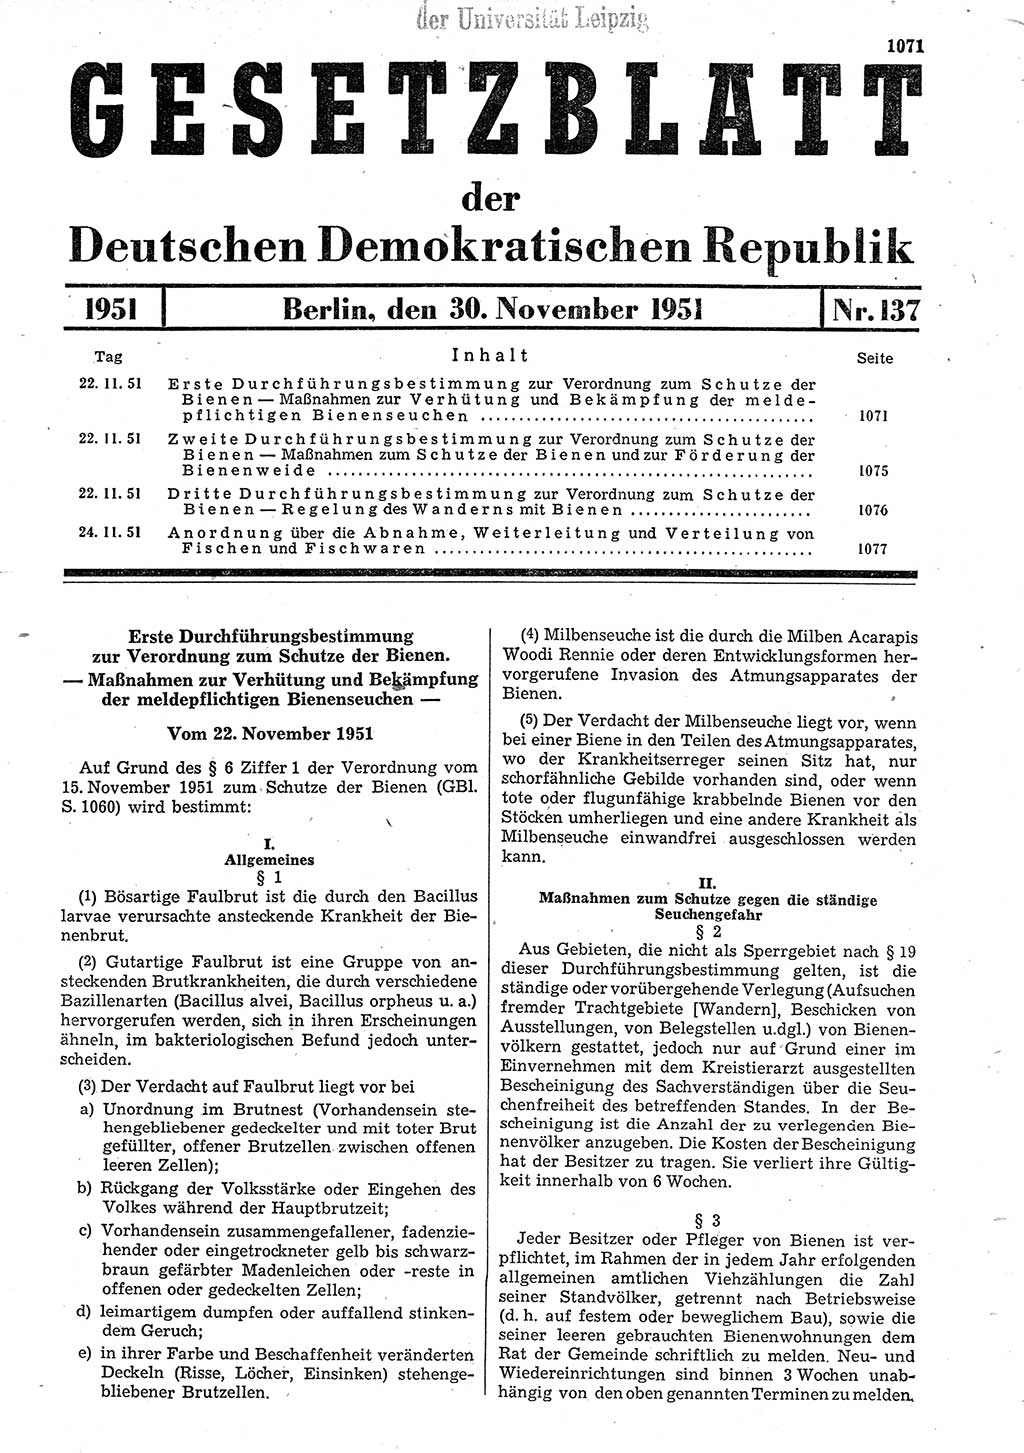 Gesetzblatt (GBl.) der Deutschen Demokratischen Republik (DDR) 1951, Seite 1071 (GBl. DDR 1951, S. 1071)